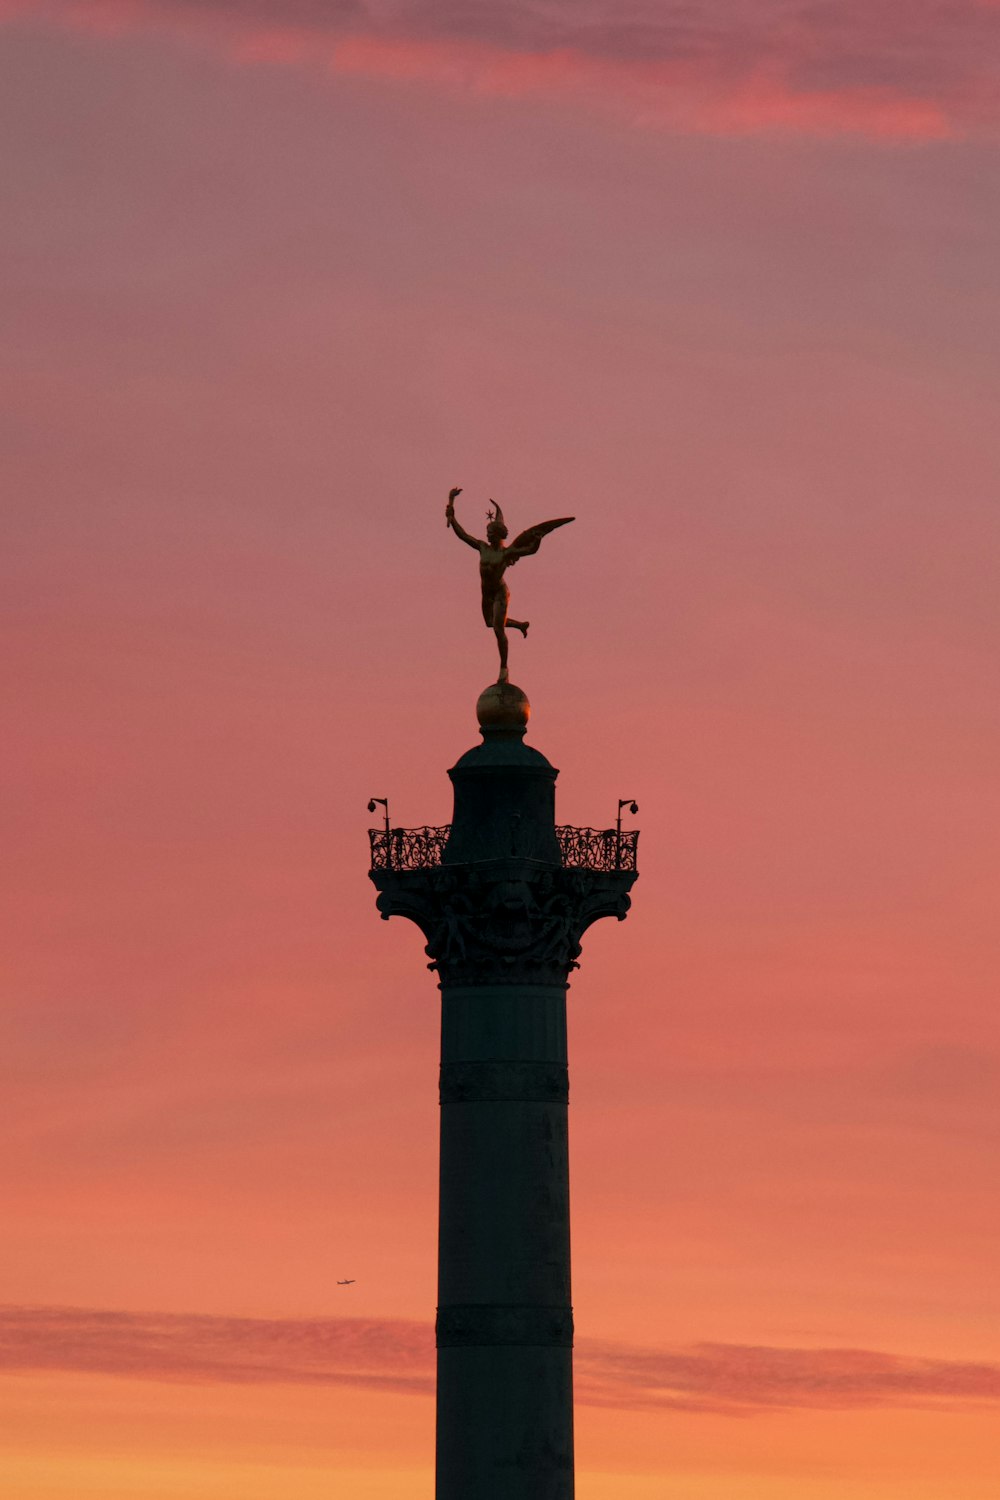 uma estátua no topo de uma torre com um pássaro em cima dela